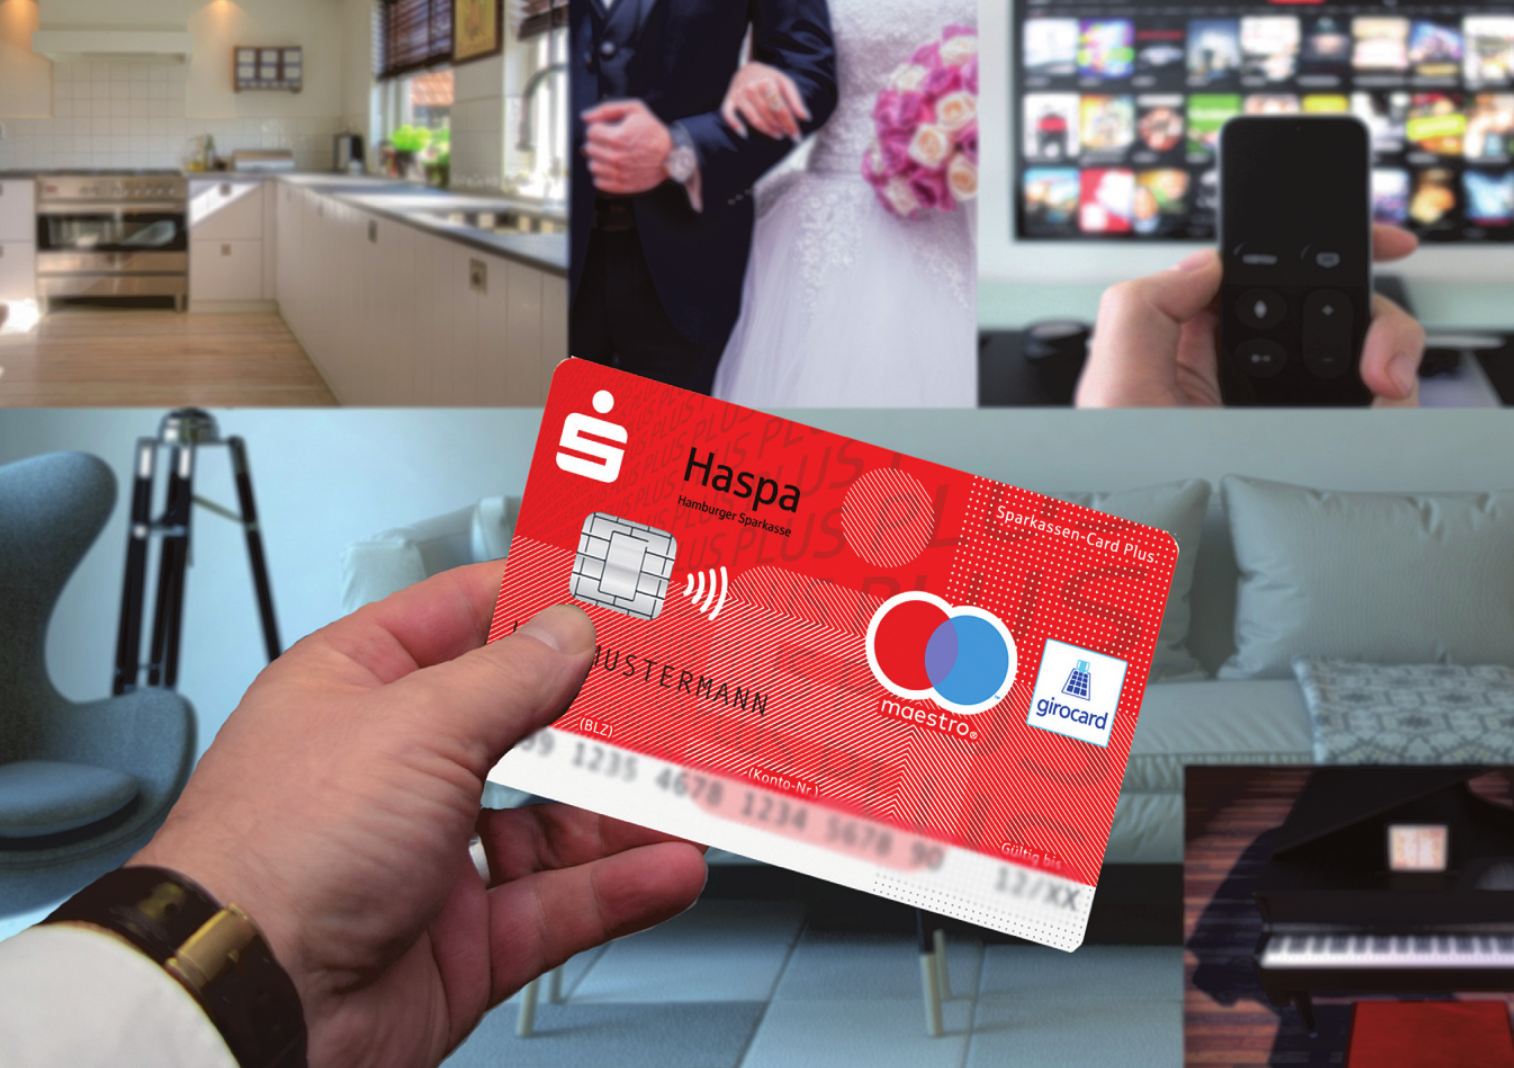 Sparkassen Card Plus Von Der Haspa F r Mehr Finanzspielraum